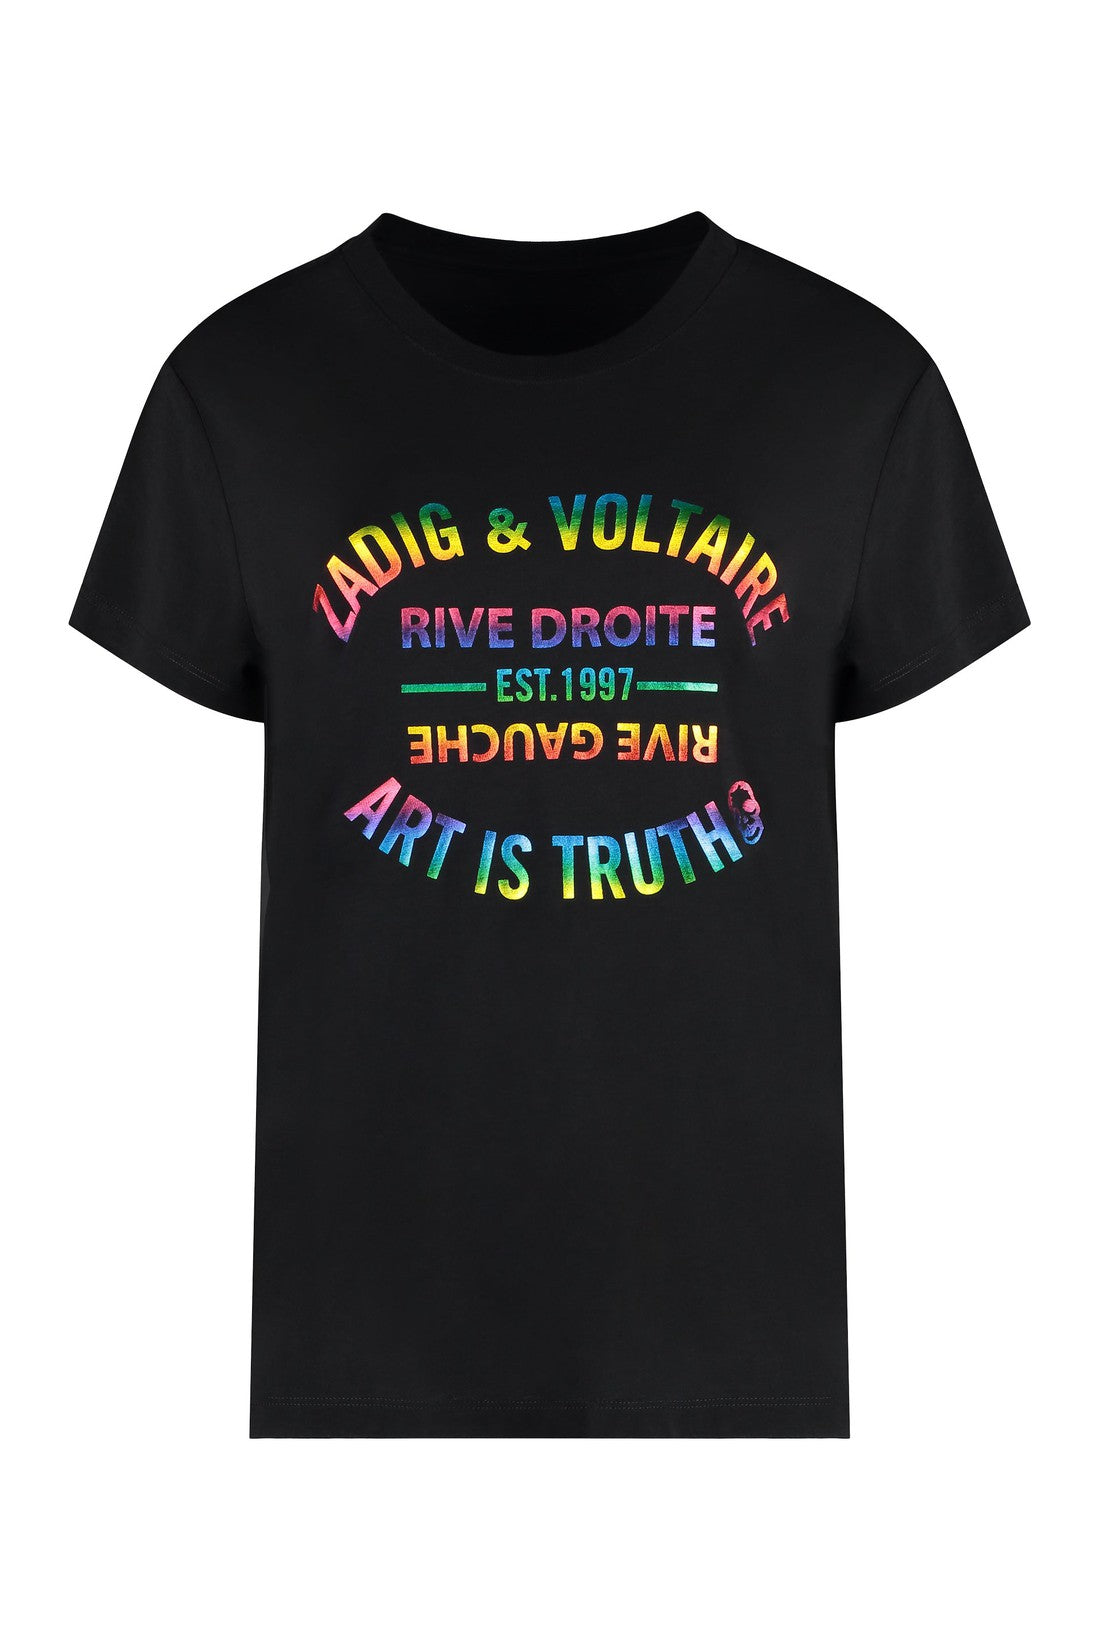 ZADIG&VOLTAIRE-OUTLET-SALE-Cotton blend crew-neck T-shirt-ARCHIVIST